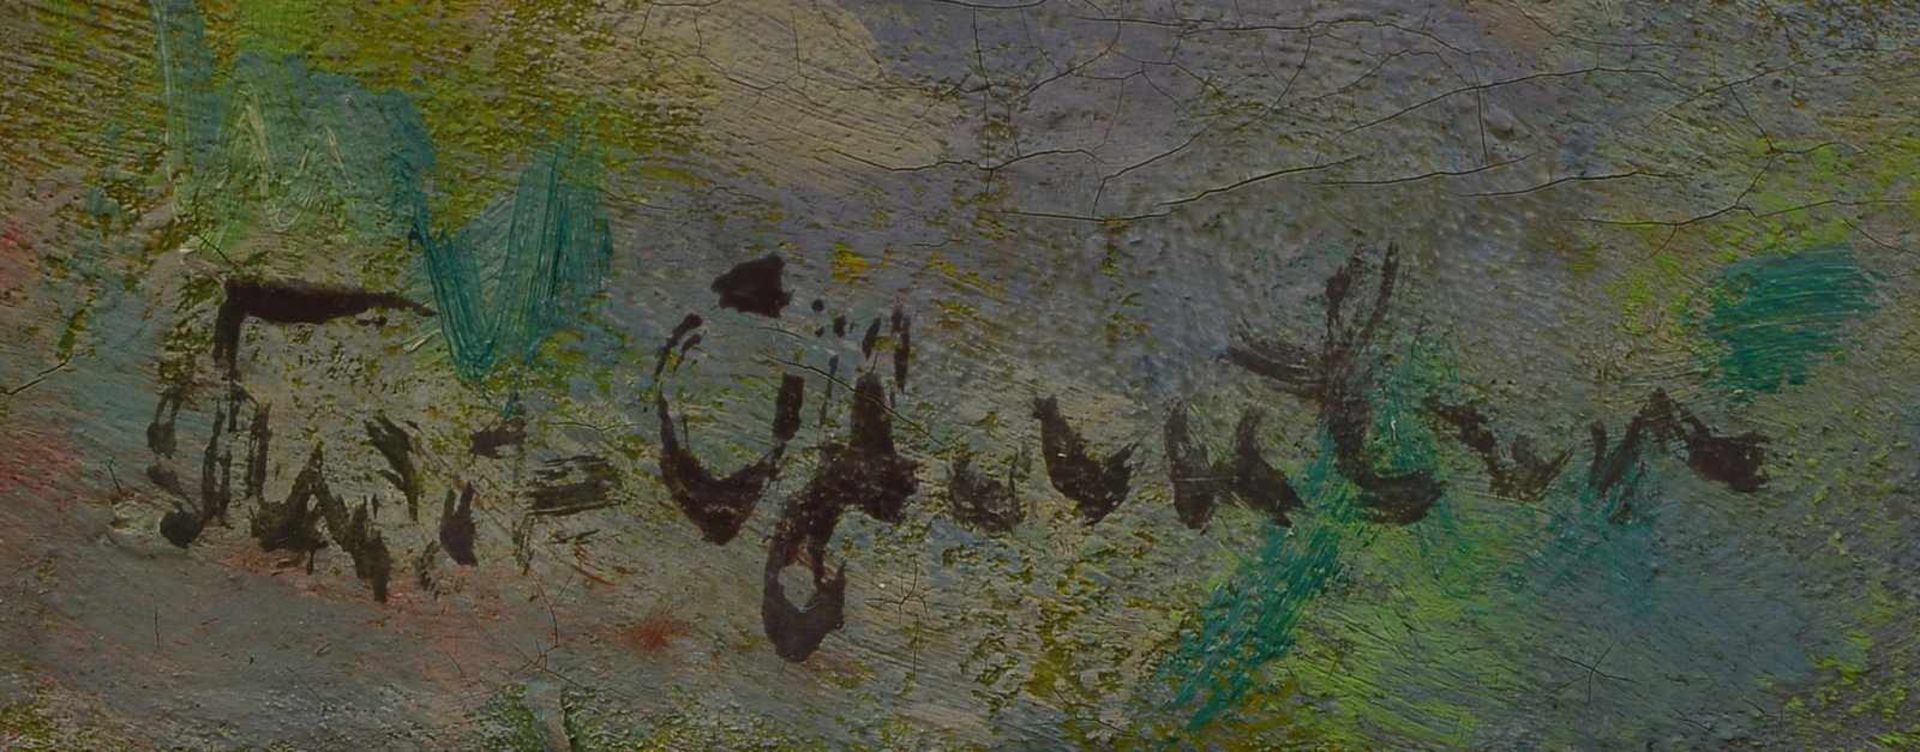 Glauber, Kurt, 'Kutschfahrt', Öl auf Leinwand/doubliert, unten links signiert; Maße 40 x 42,5 cm - Bild 2 aus 2